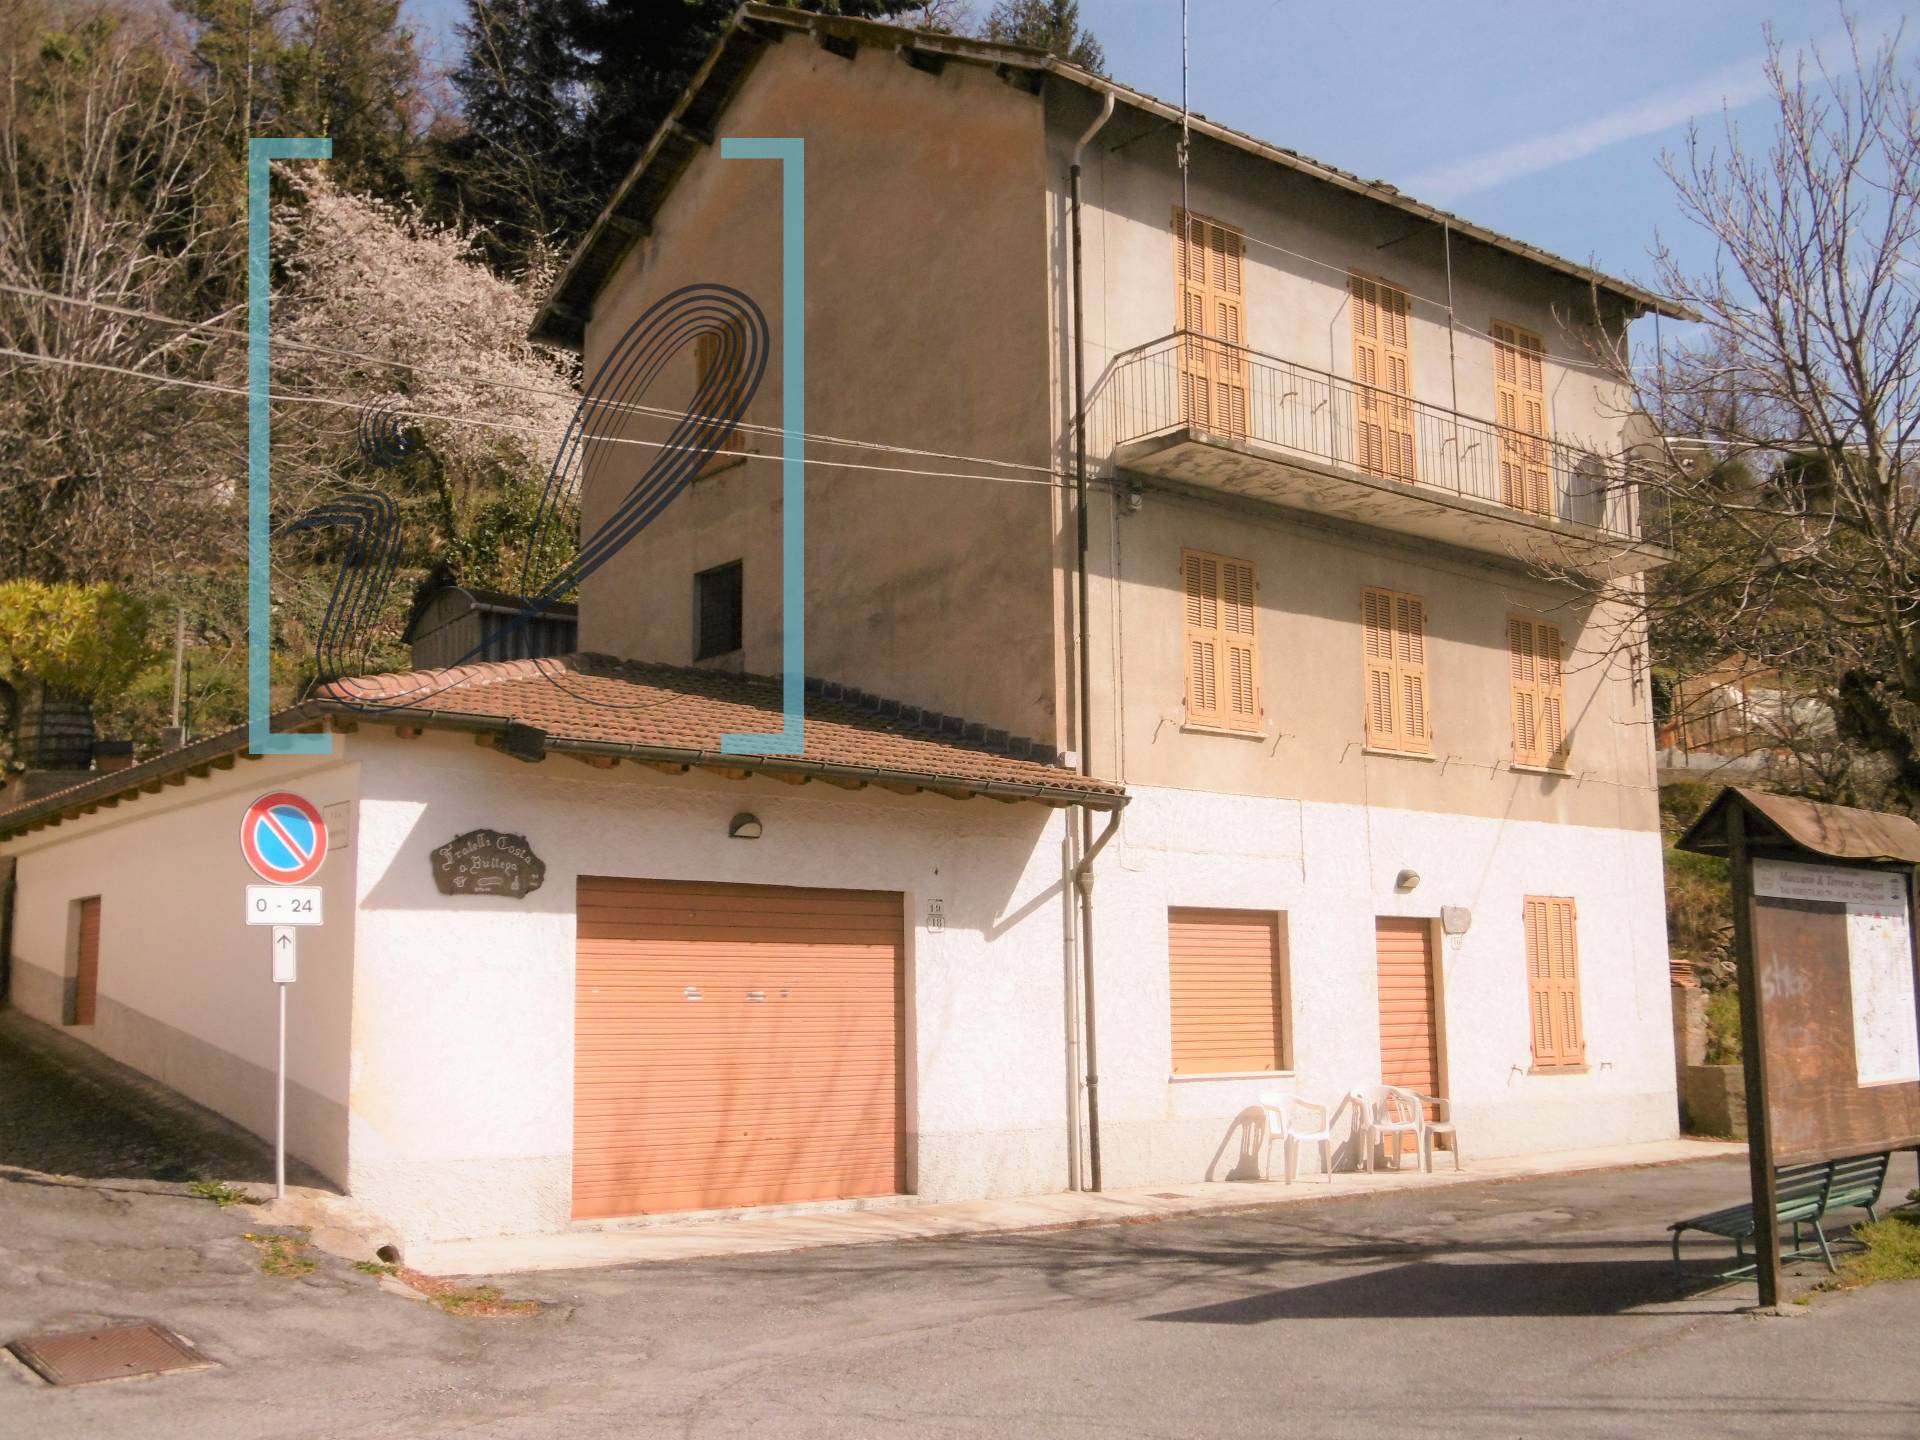 Rustico / Casale in vendita a Pornassio, 8 locali, zona Zona: Ottano, prezzo € 50.000 | CambioCasa.it